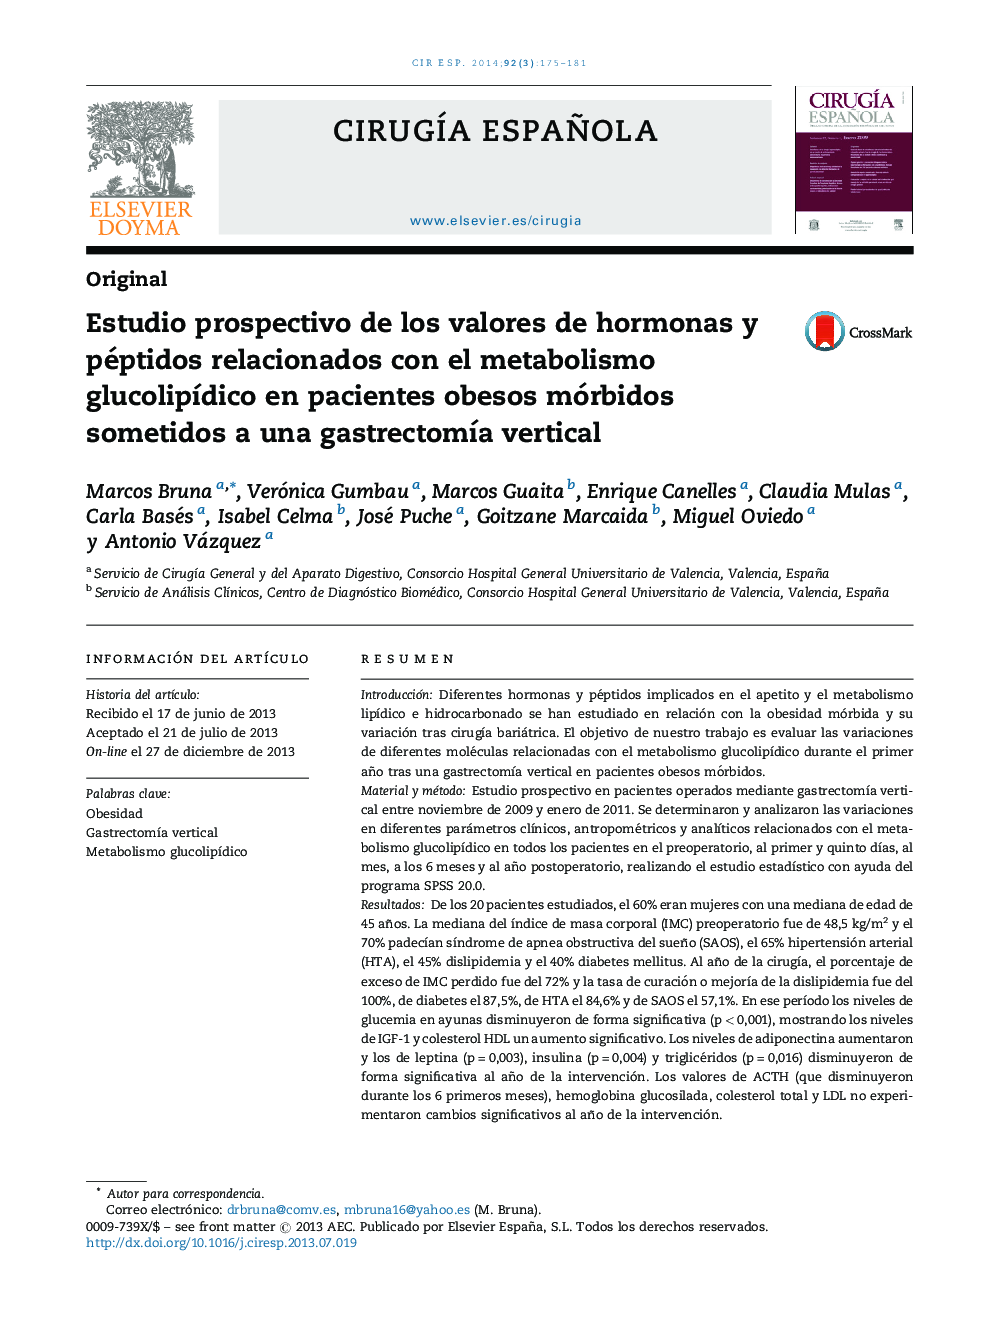 Estudio prospectivo de los valores de hormonas y péptidos relacionados con el metabolismo glucolipÃ­dico en pacientes obesos mórbidos sometidos a una gastrectomÃ­a vertical